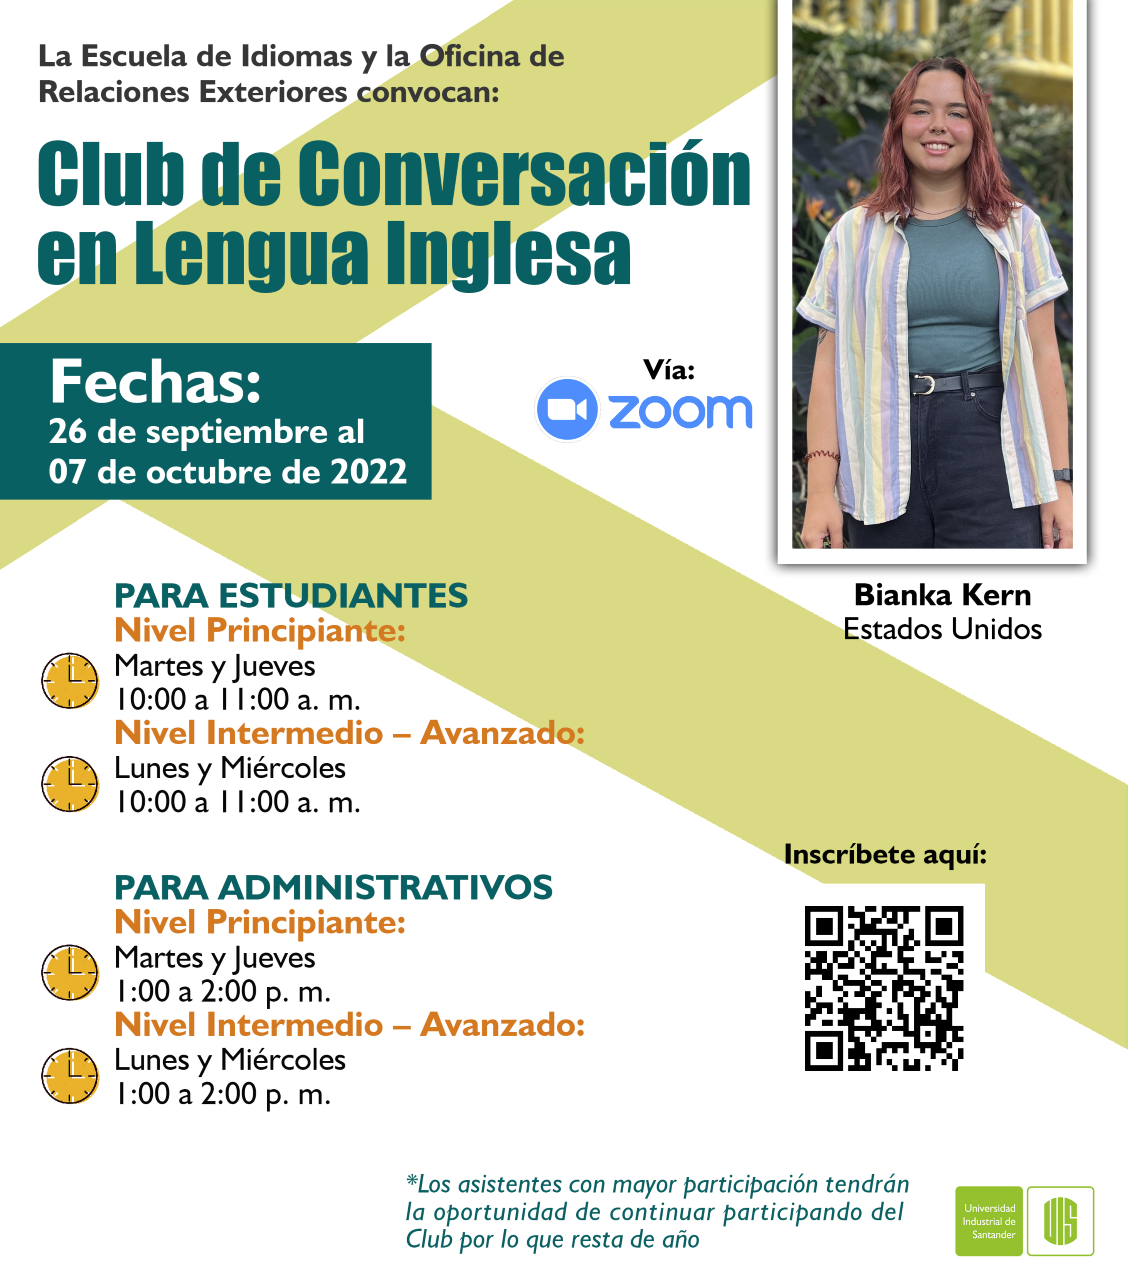 Club de Conversación en Lengua inglesa – Universidad Industrial de Santander